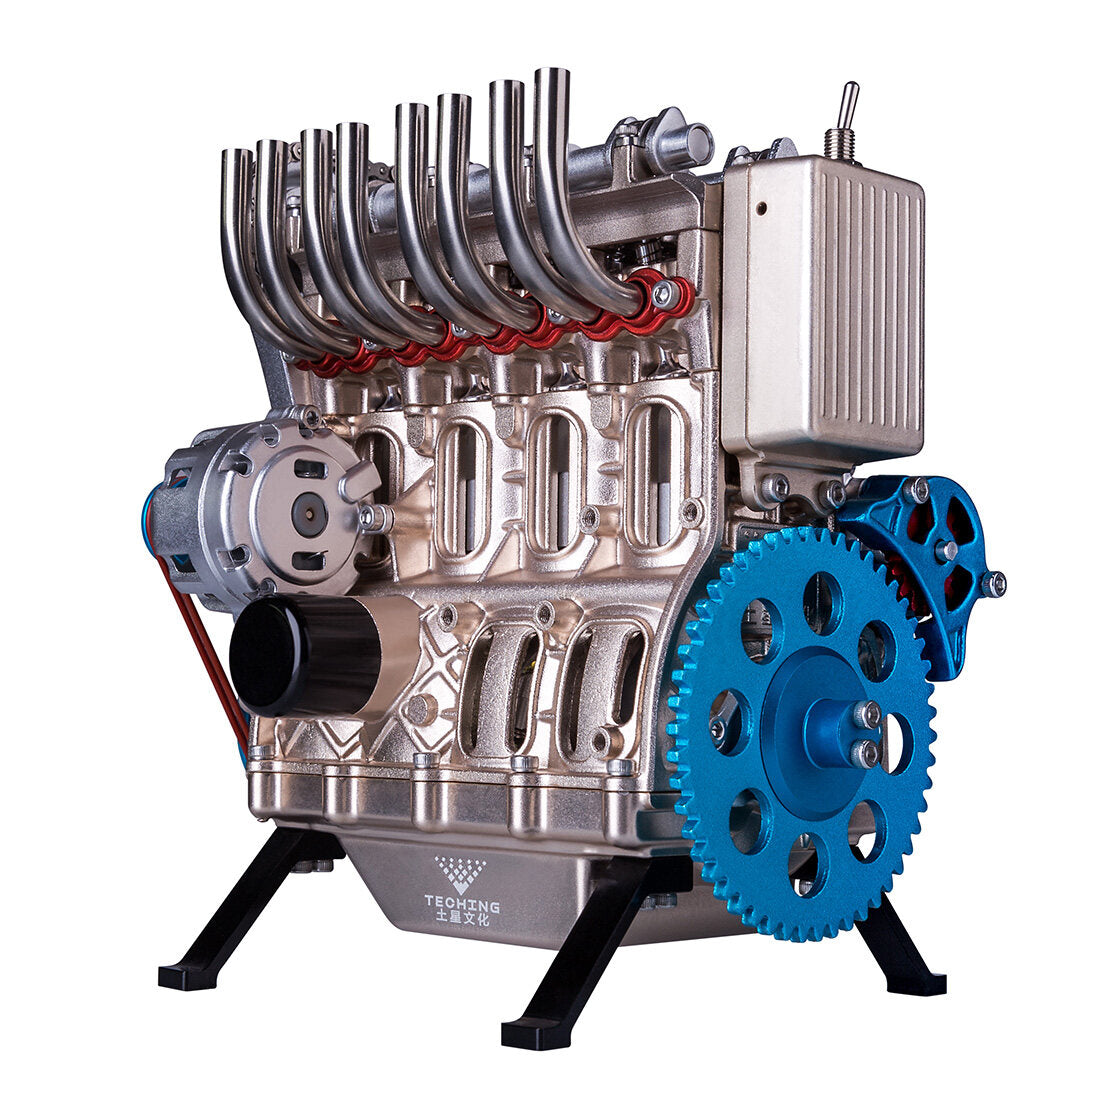 TECHING Inline-4-Zylinder-Automotor Modellbausatz - Bauen Sie Ihren Eigenen Funktionierenden Motor 1